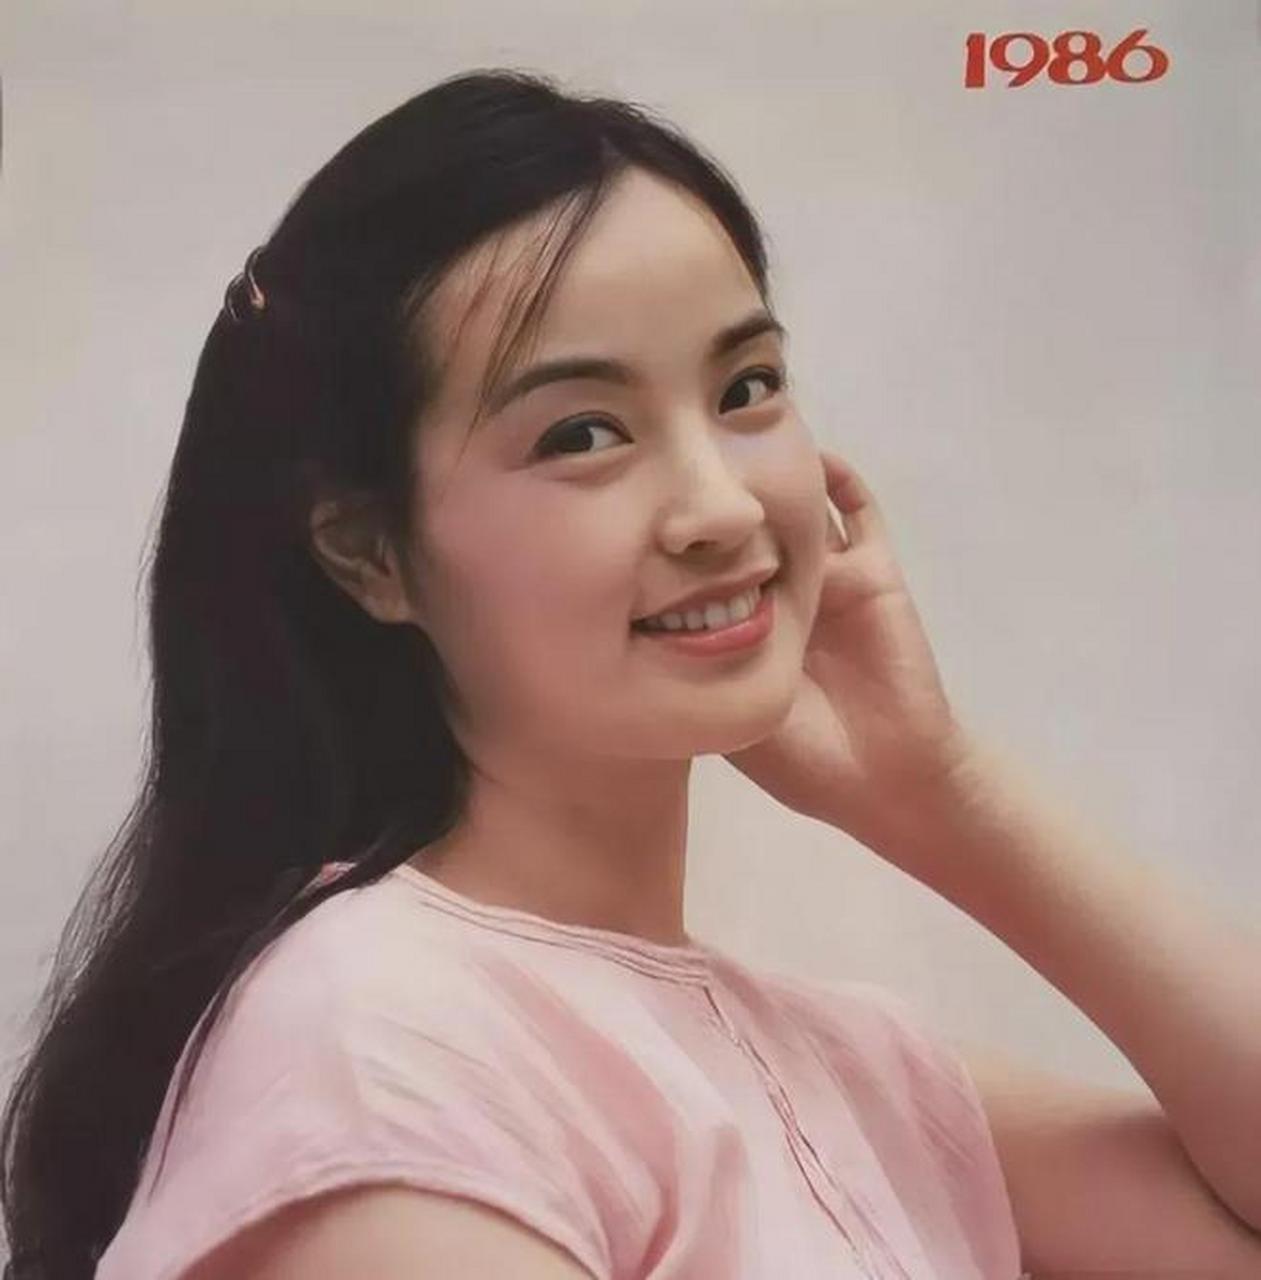 照片拍摄于1986年,拍摄对象是国家级演员刘晓庆